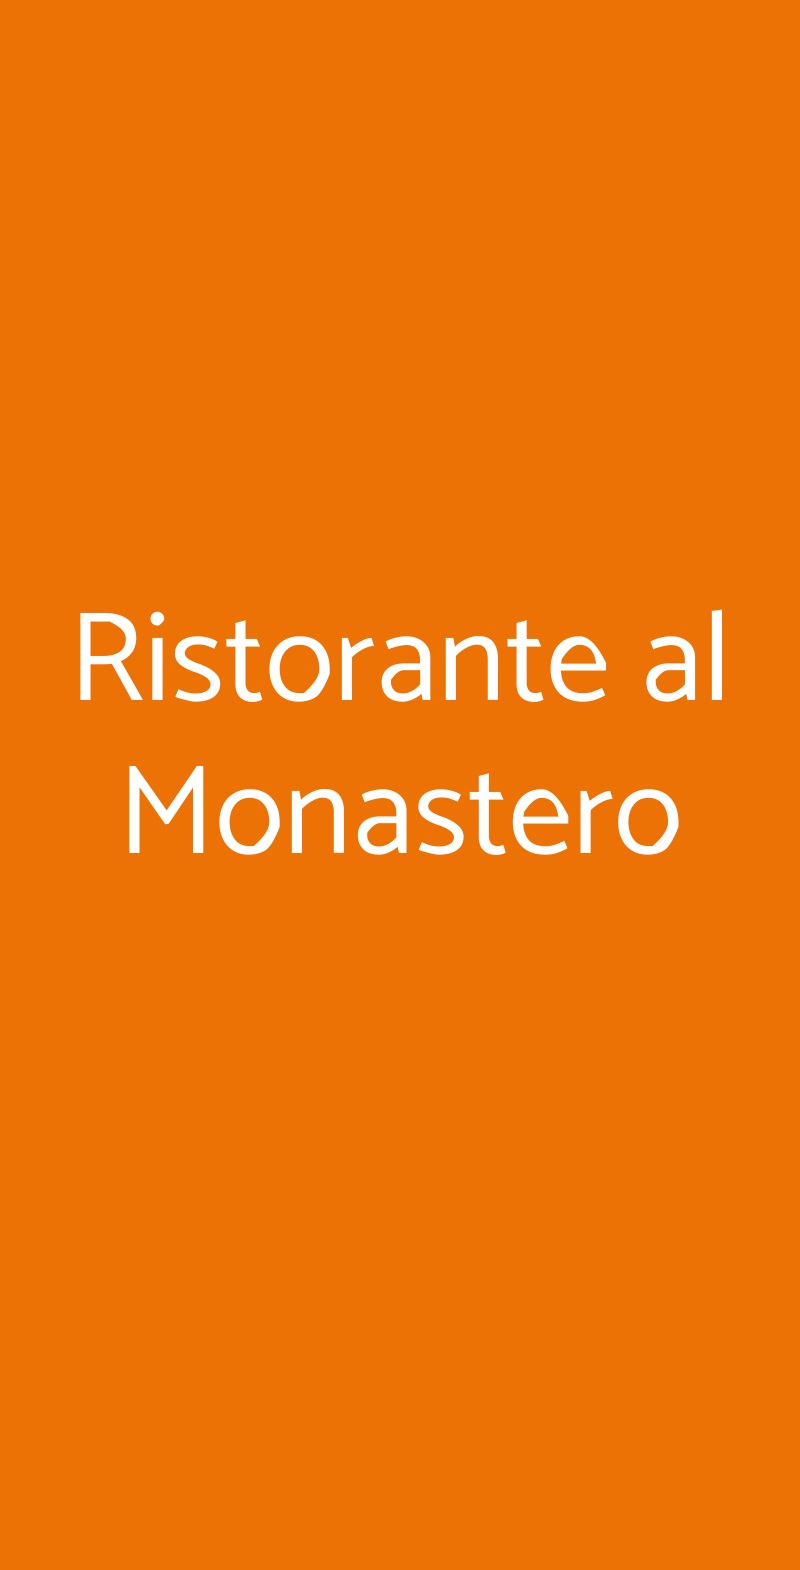 Ristorante al Monastero Soiano del Lago menù 1 pagina